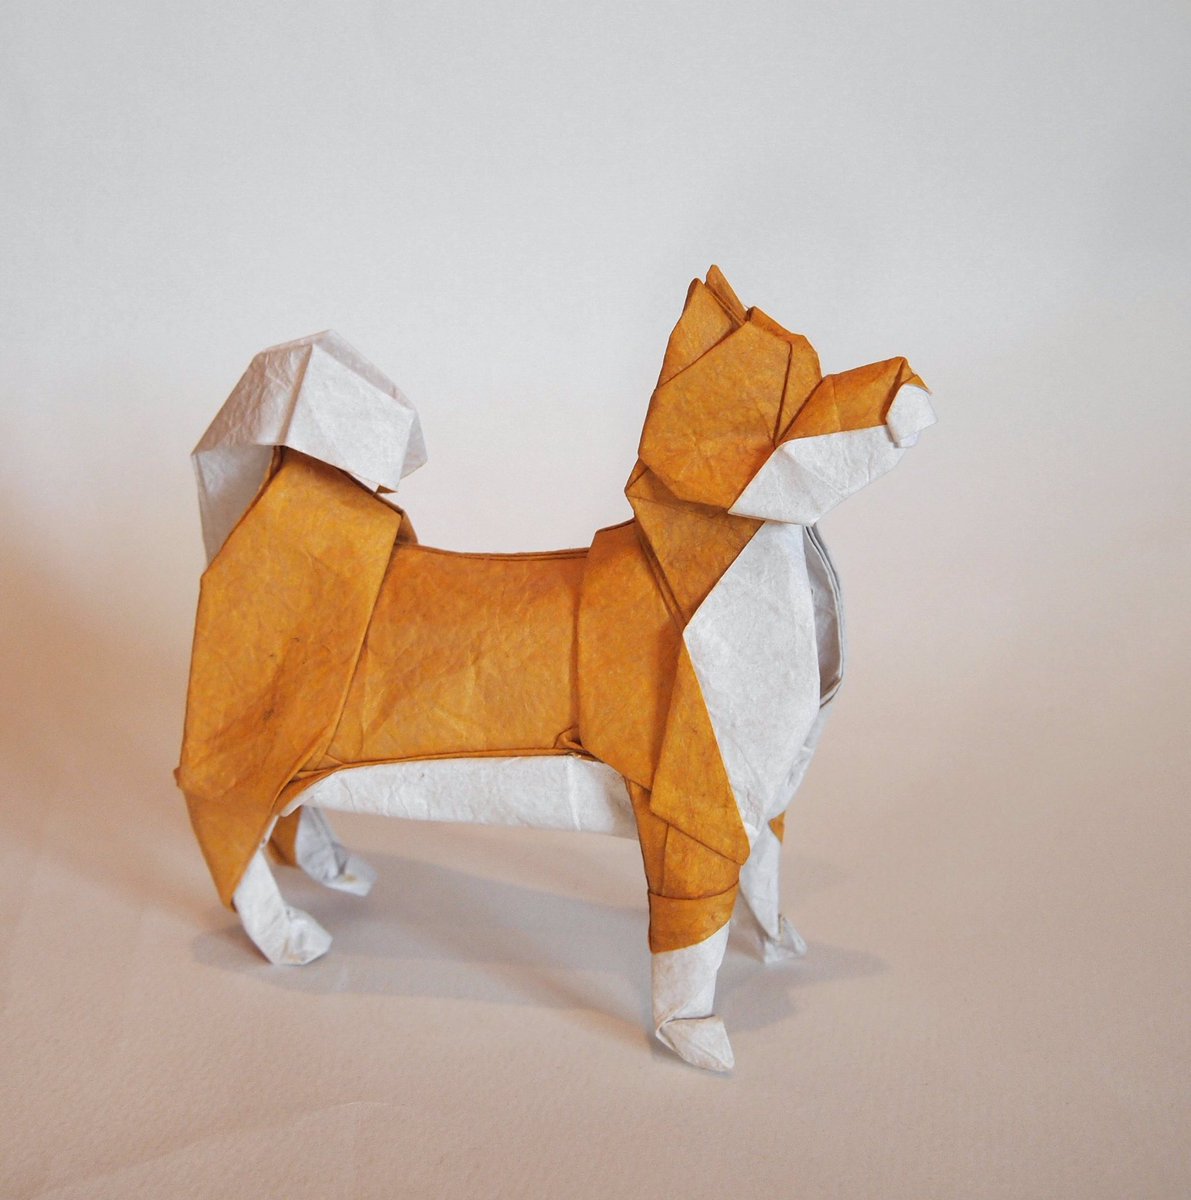 一匹柴犬 折り紙作品 柴犬 創作 折り 一匹柴犬 昔折った柴犬 をリニューアルしました 下半身を改善 だいたい説明できる折り方にできたので いつか 折り図描きます Origami Dog 折り紙 折り紙作品 柴犬 T Co Trxaeevo1m Twitter